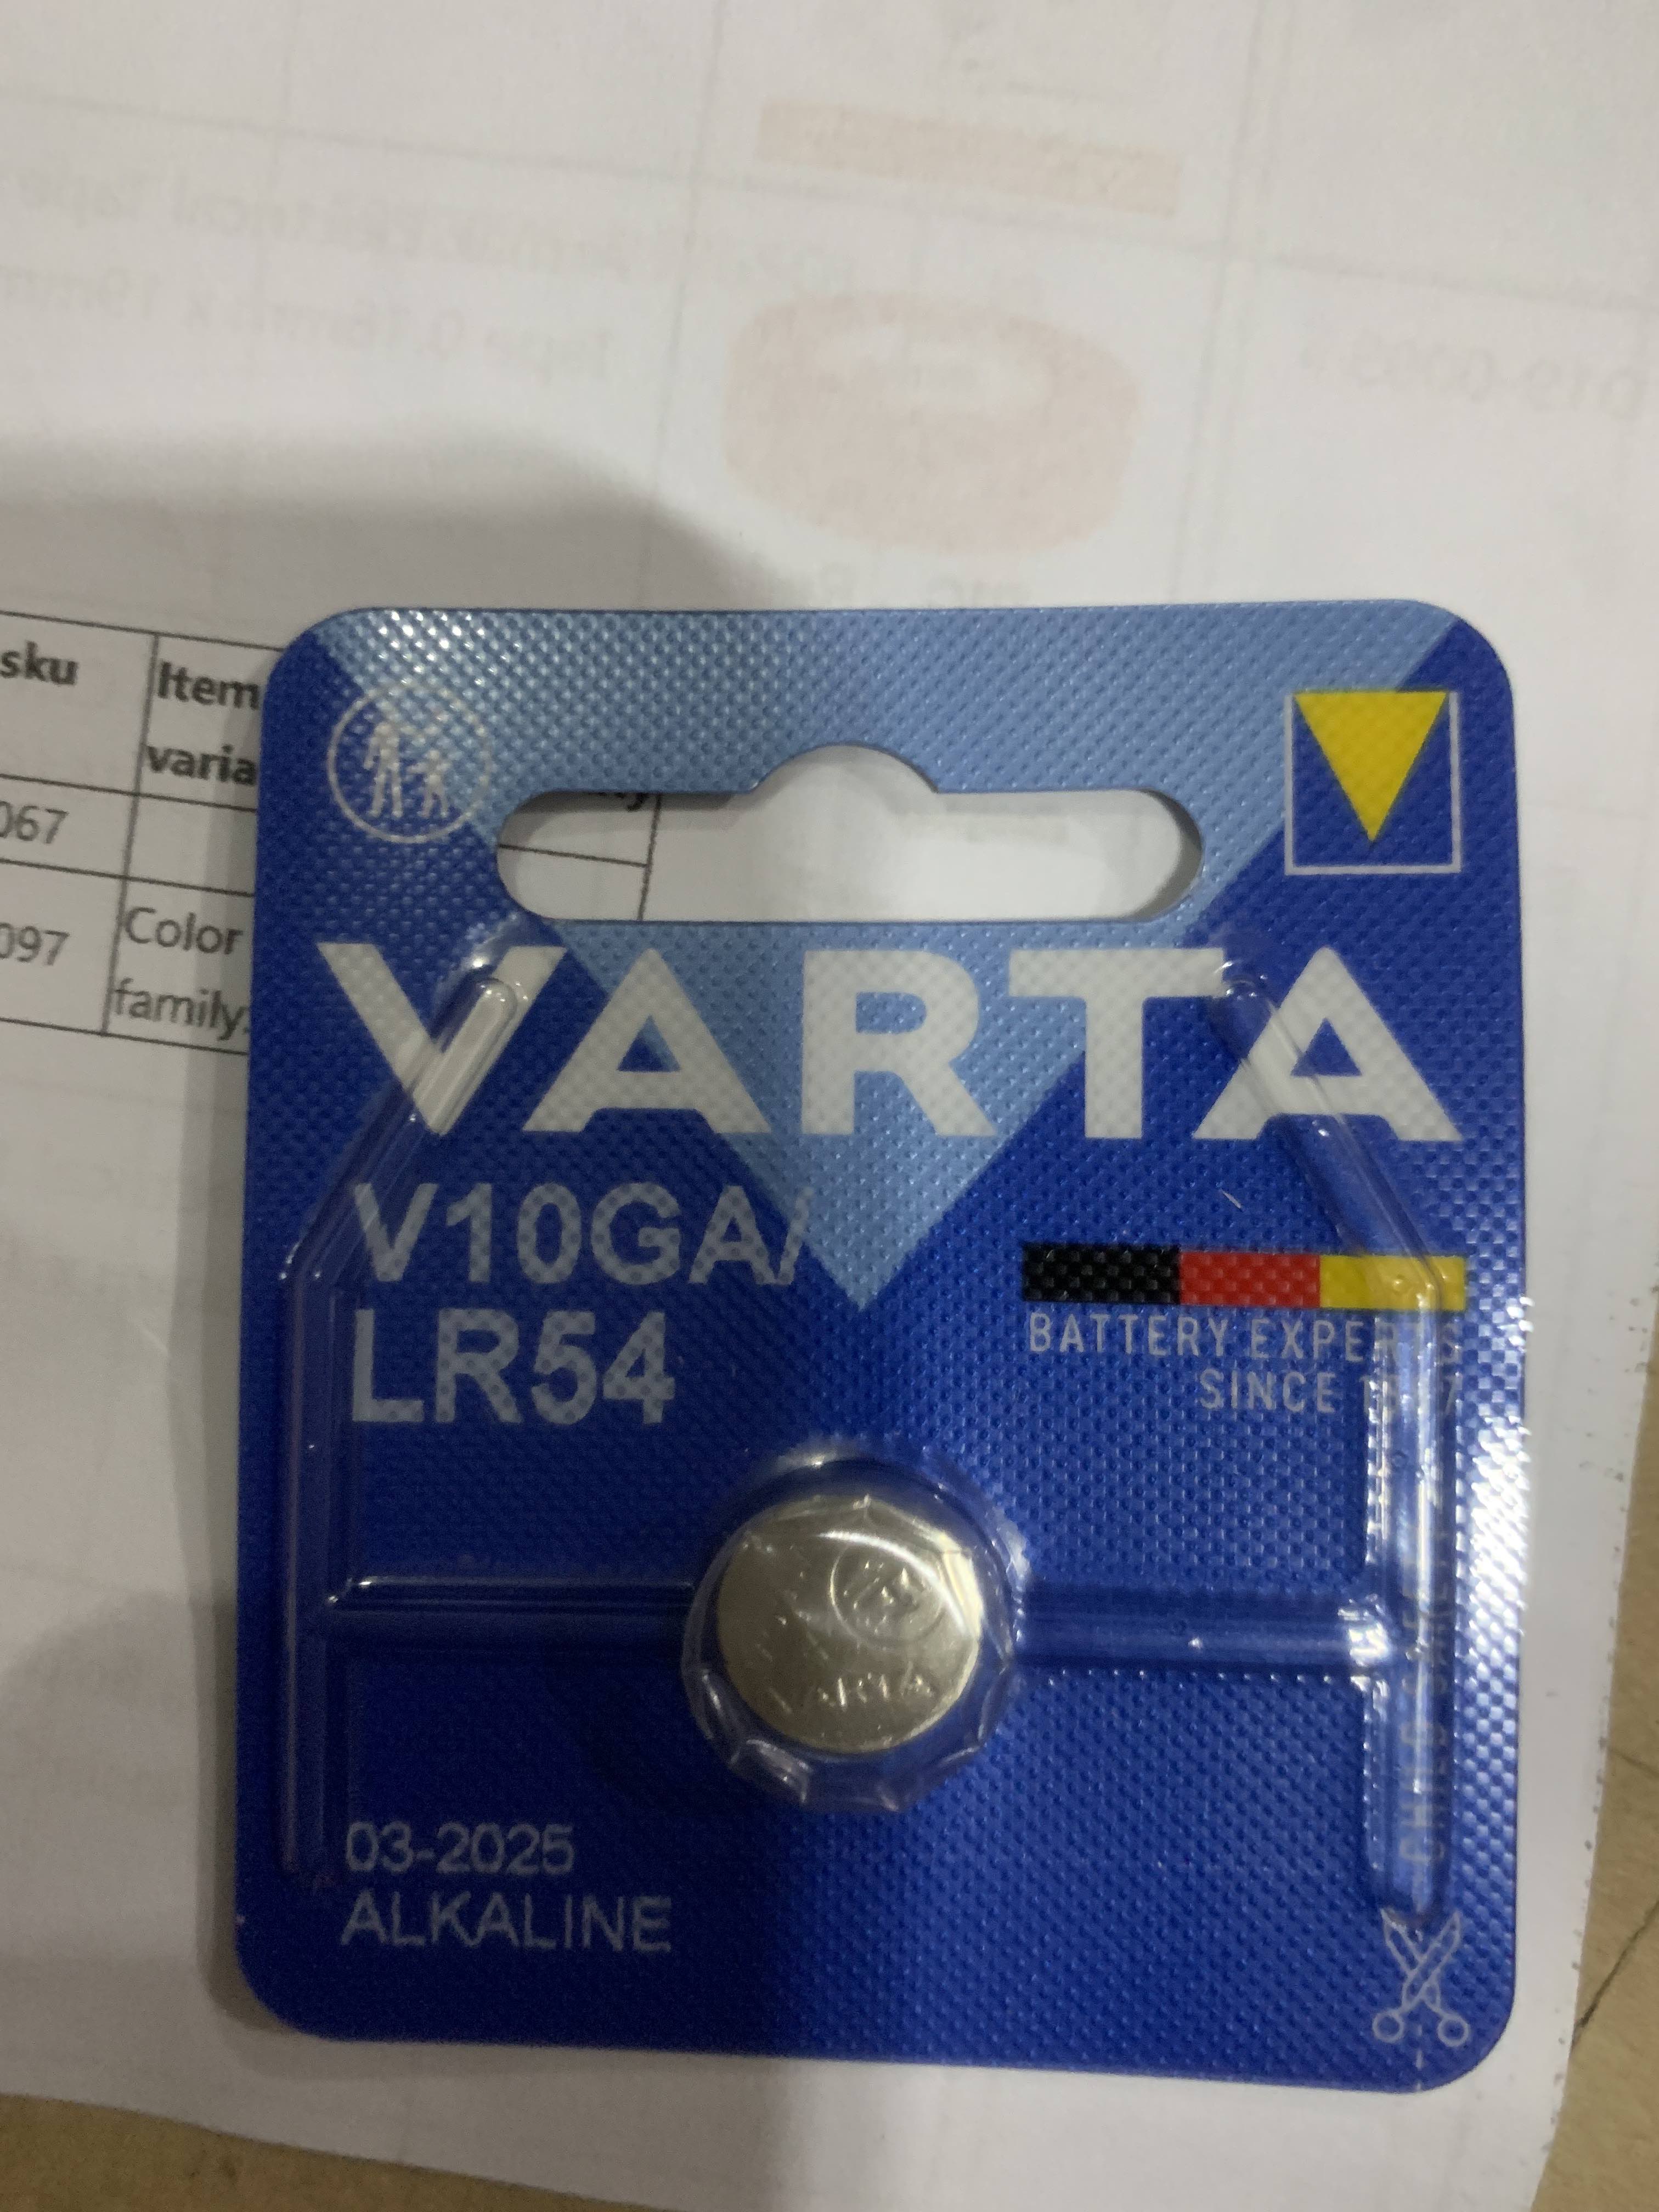 Varta Alkaline button cell , LR54, LR1130, V10GA